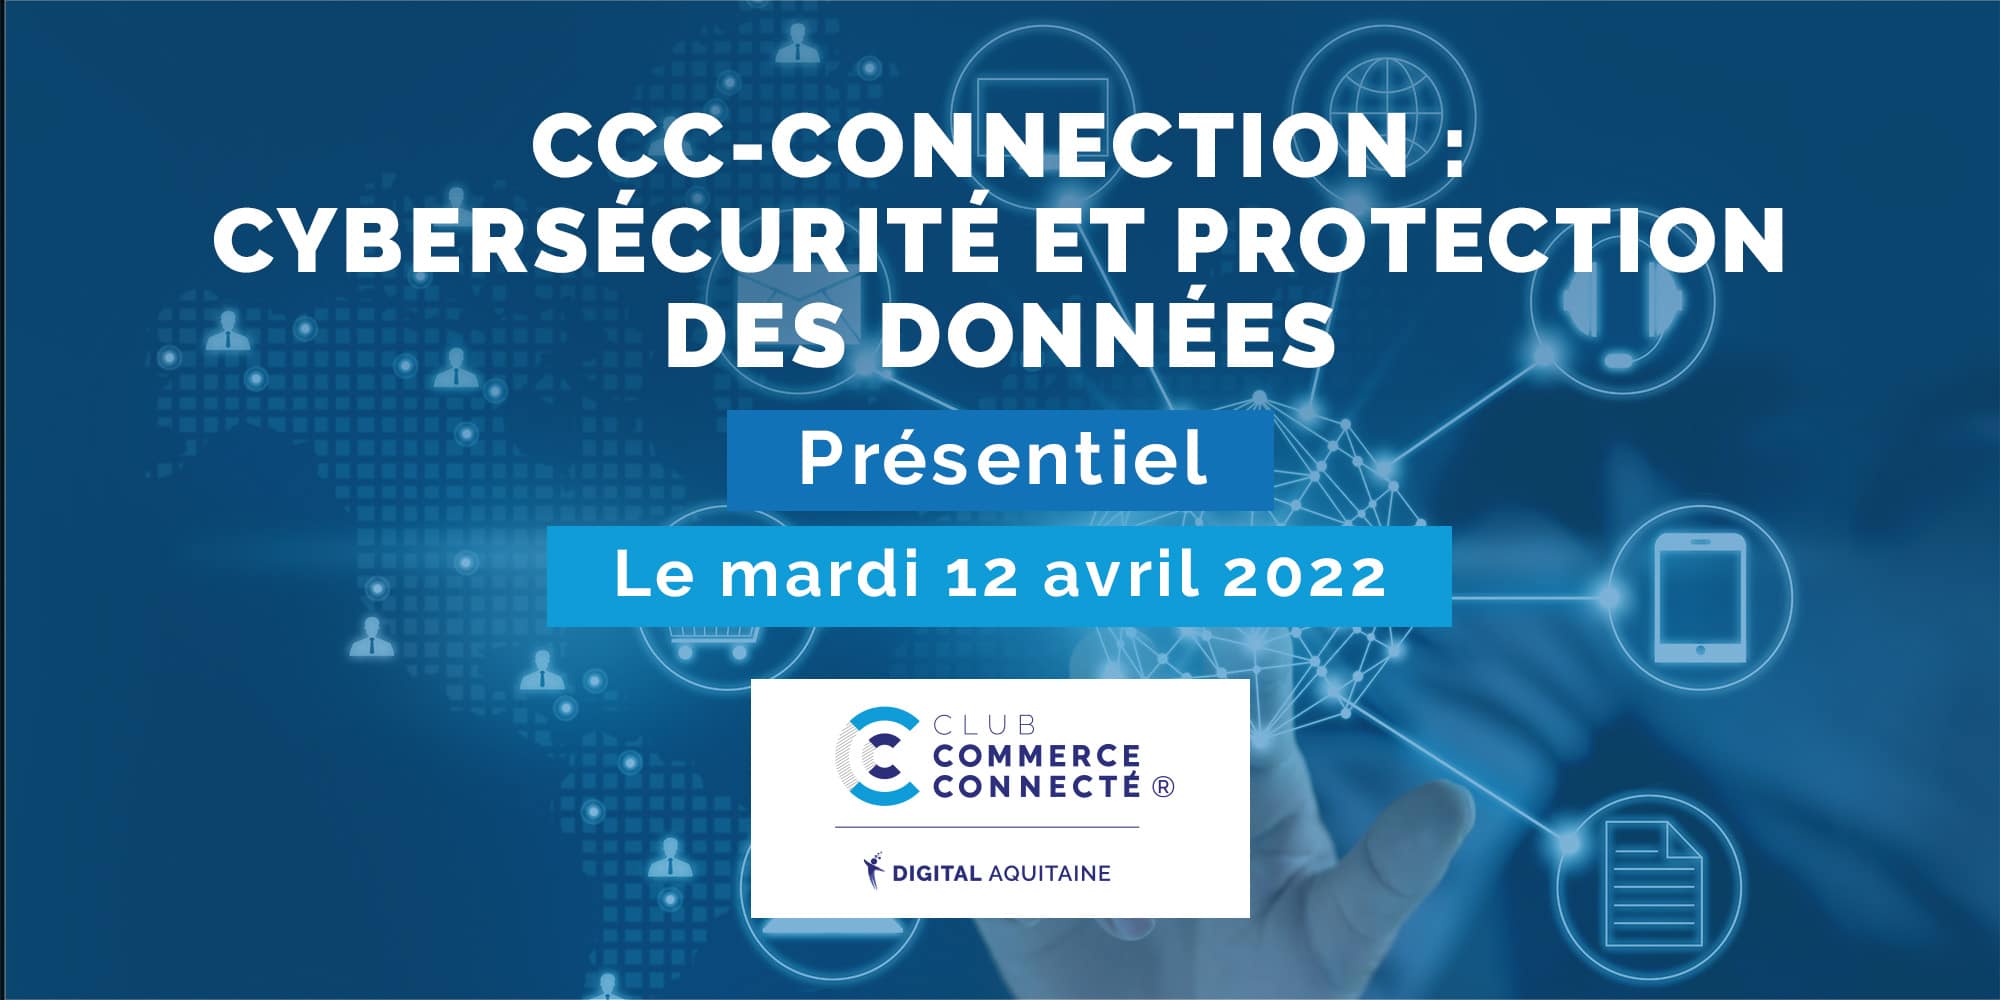 CCC-CONNECTION Cybersécurité 